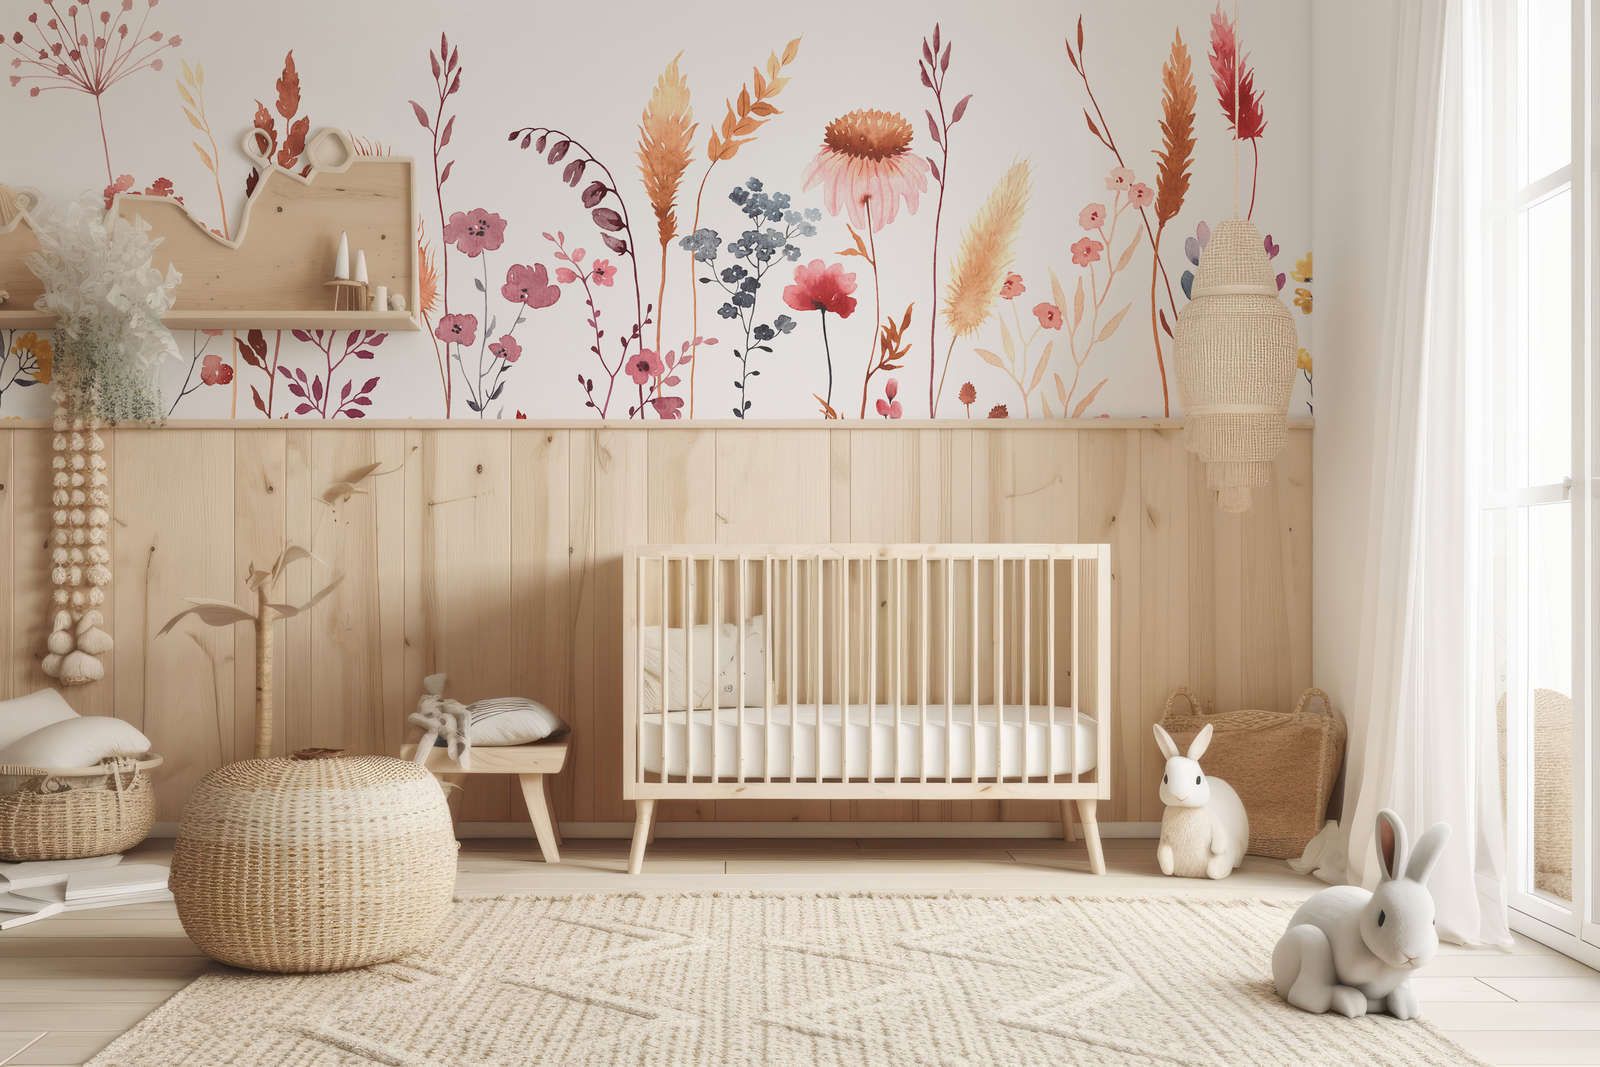             Papel pintado fotográfico para habitación infantil con hojas y hierbas - Material sin tejer liso y mate
        